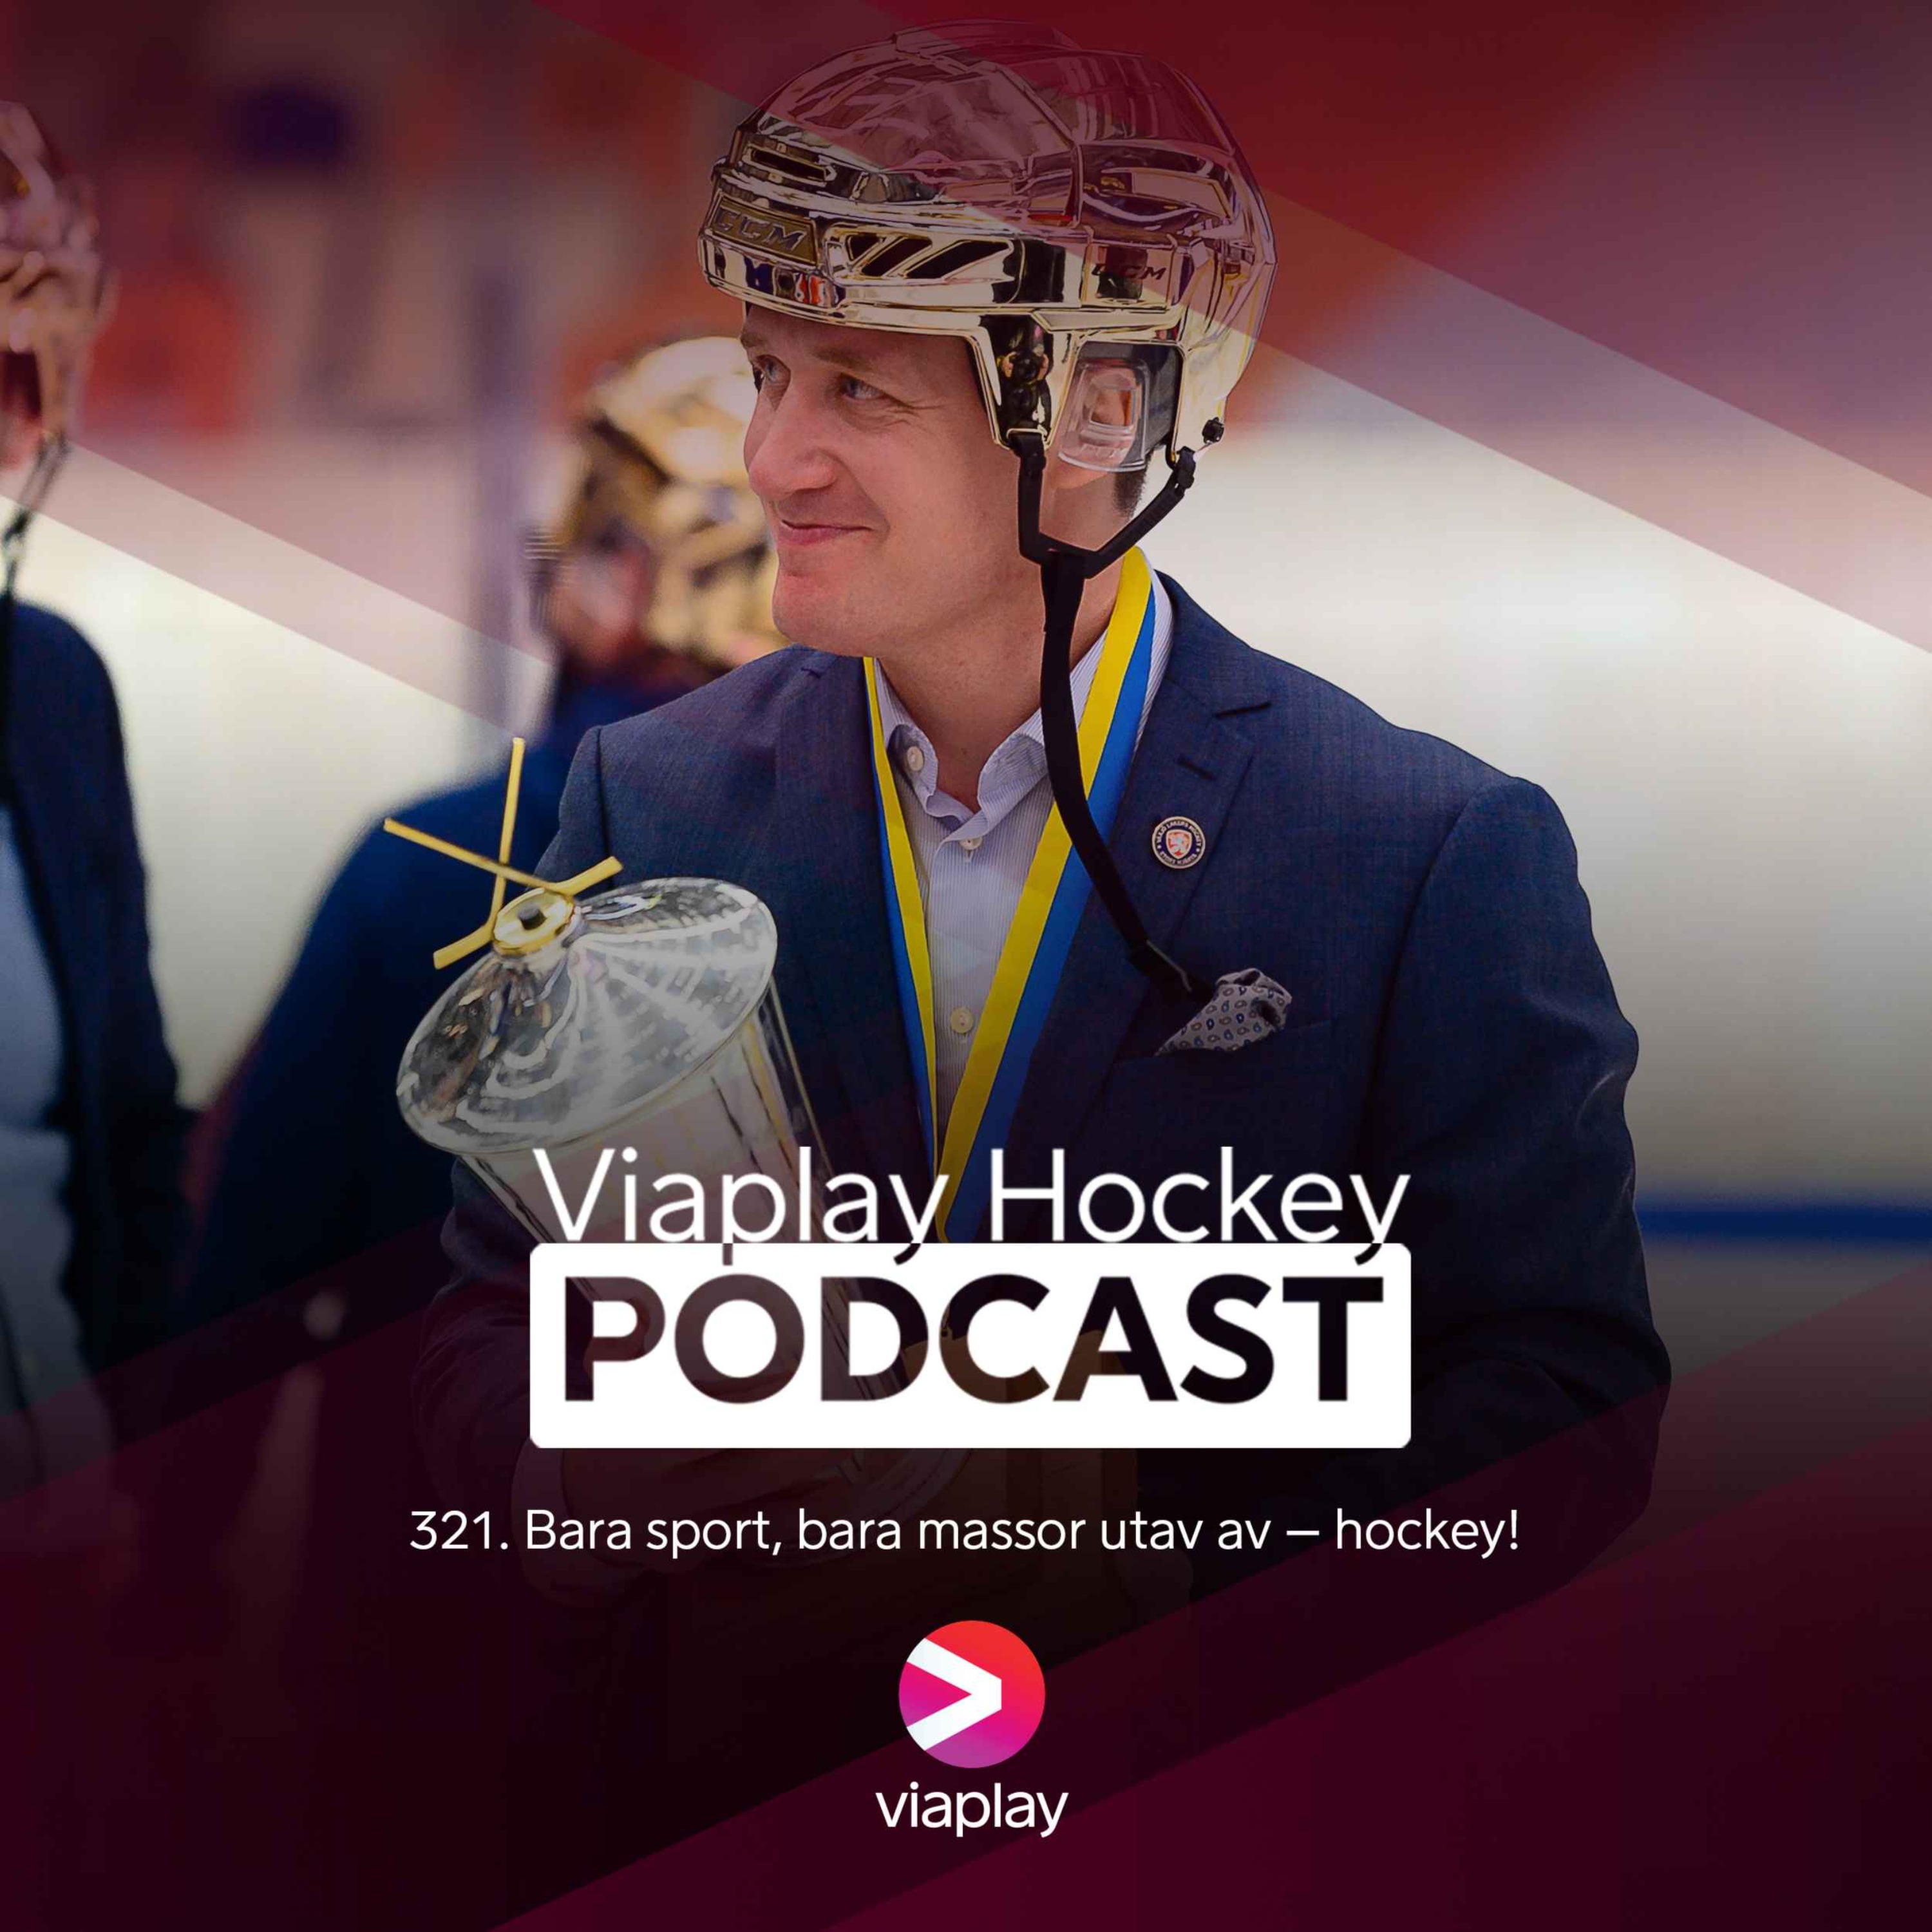 321. Viaplay Hockey Podcast – Bara sport, bara massor utav av – hockey!